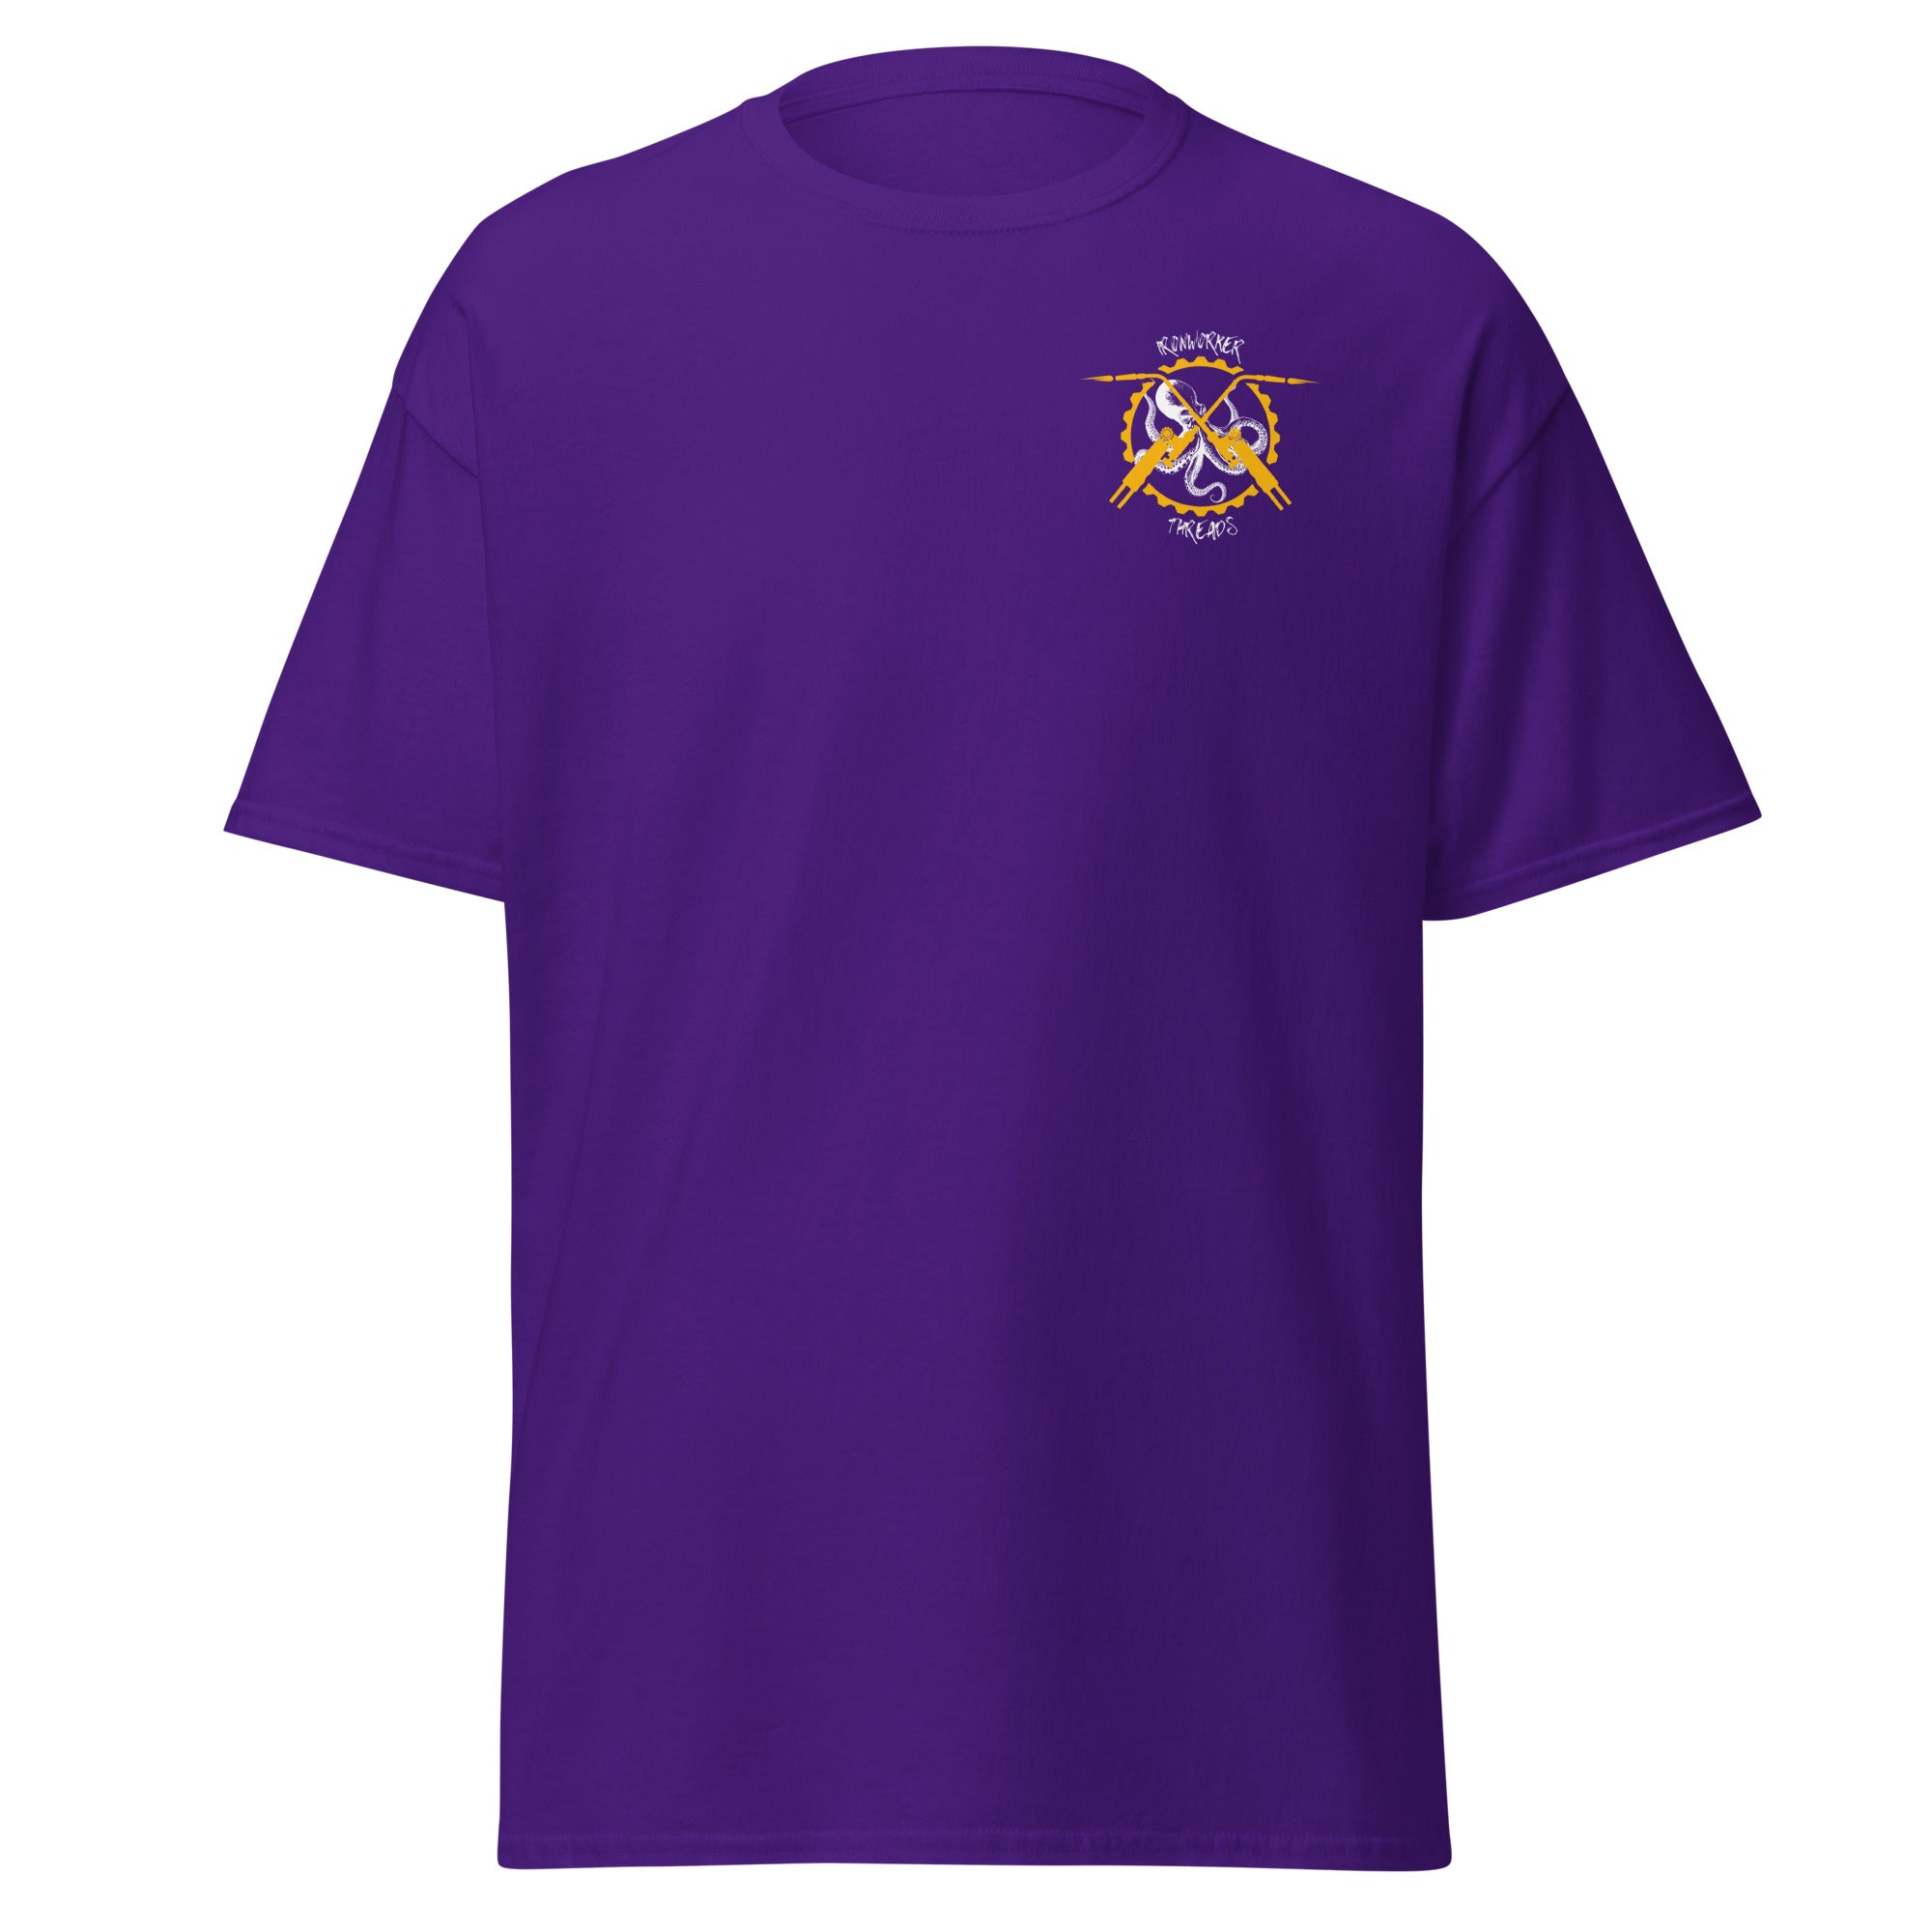 Omega Psi Phi Heather Purple Shirt